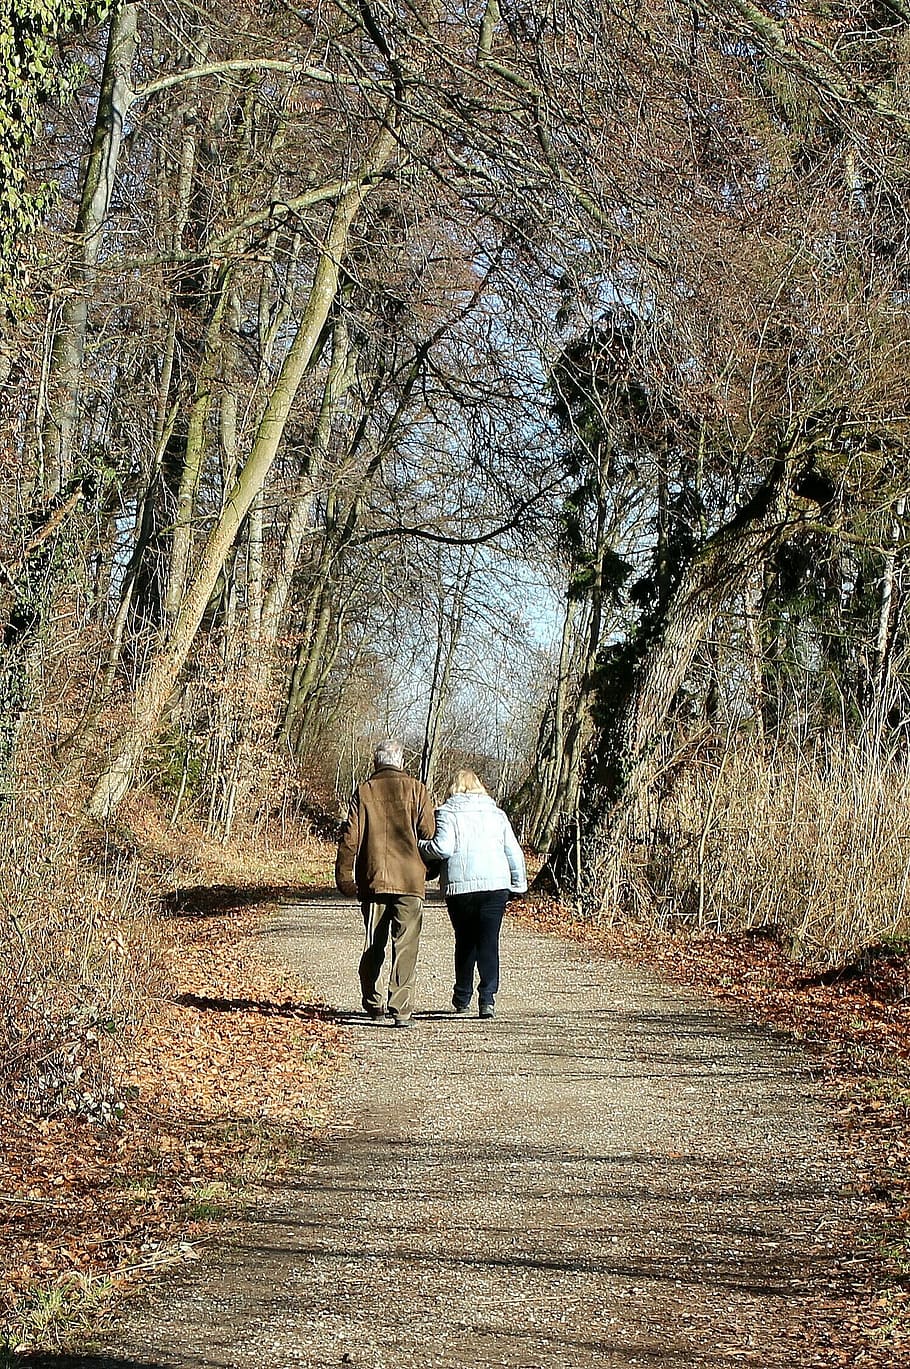 man, woman, wearing, jackets, walking, pathway, trees, nature, away, walk